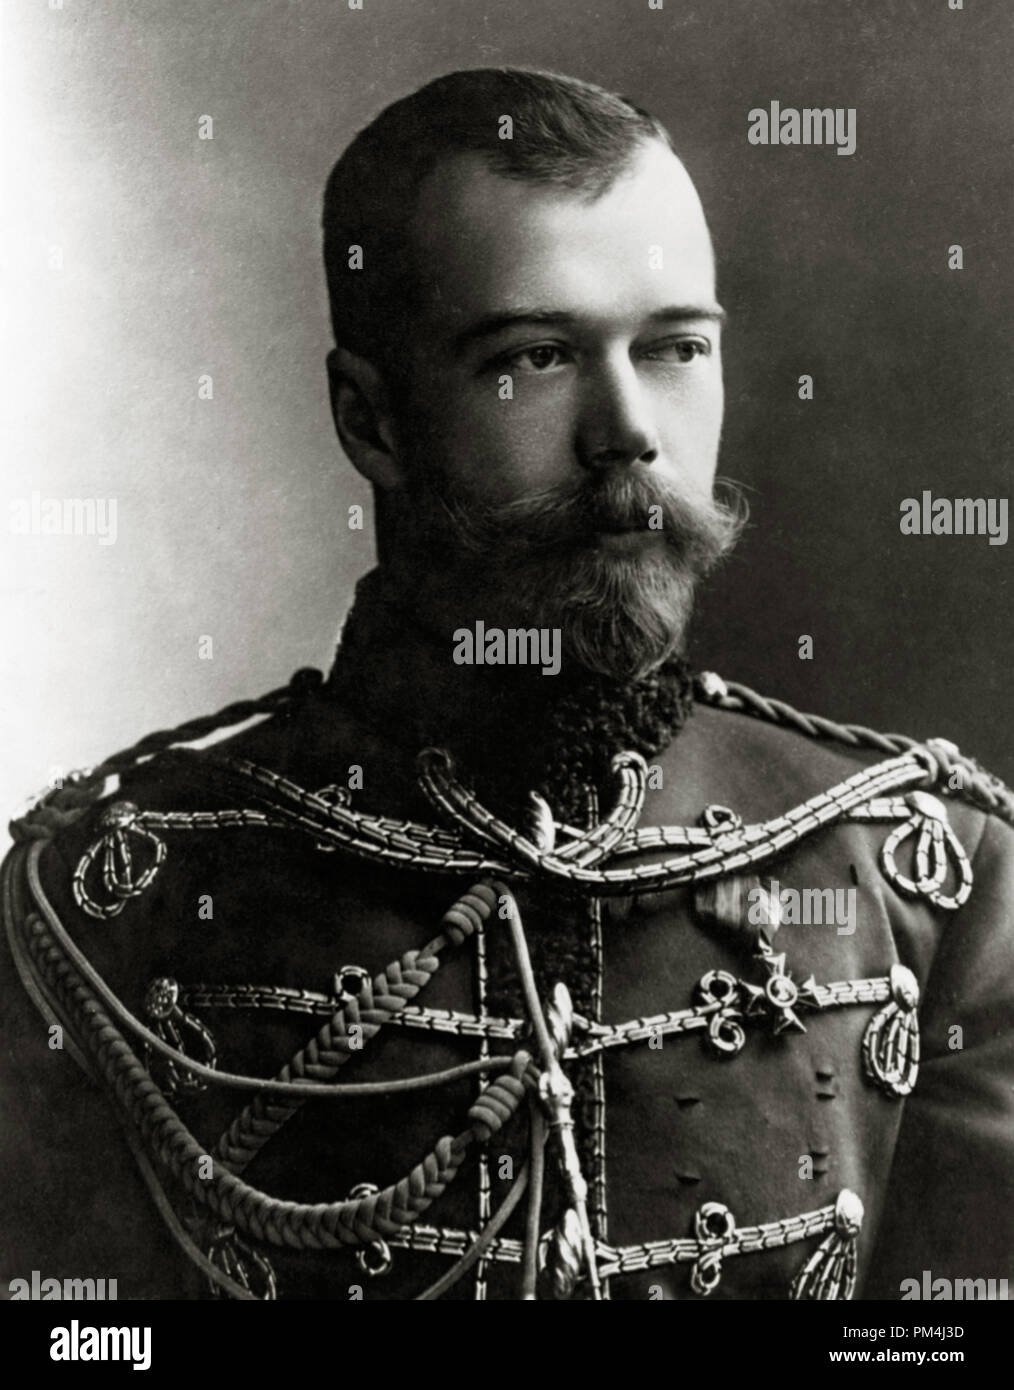 Imperatore Nicola II, fu l'ultimo zar di Russia, circa 1905 Riferimento File # 1003 497 THA Foto Stock